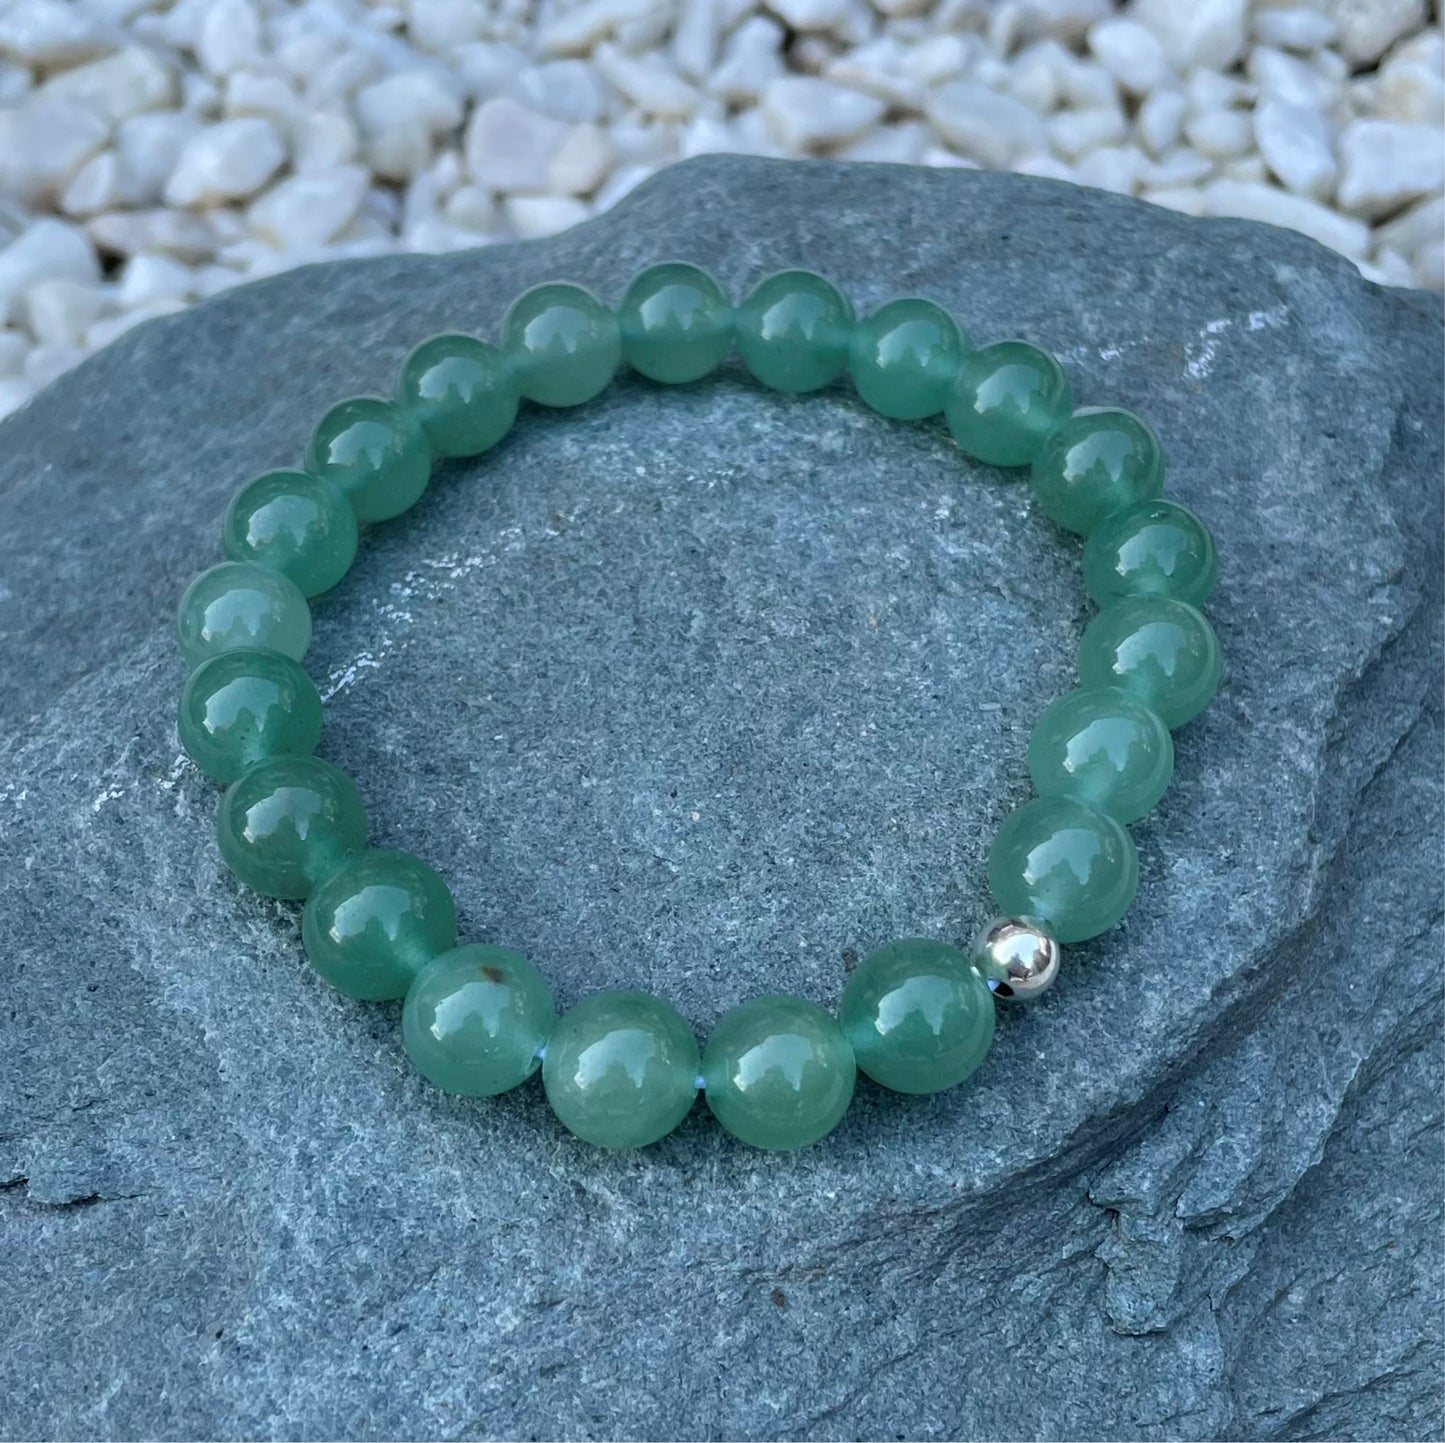 Green aventurine beaded bracelet